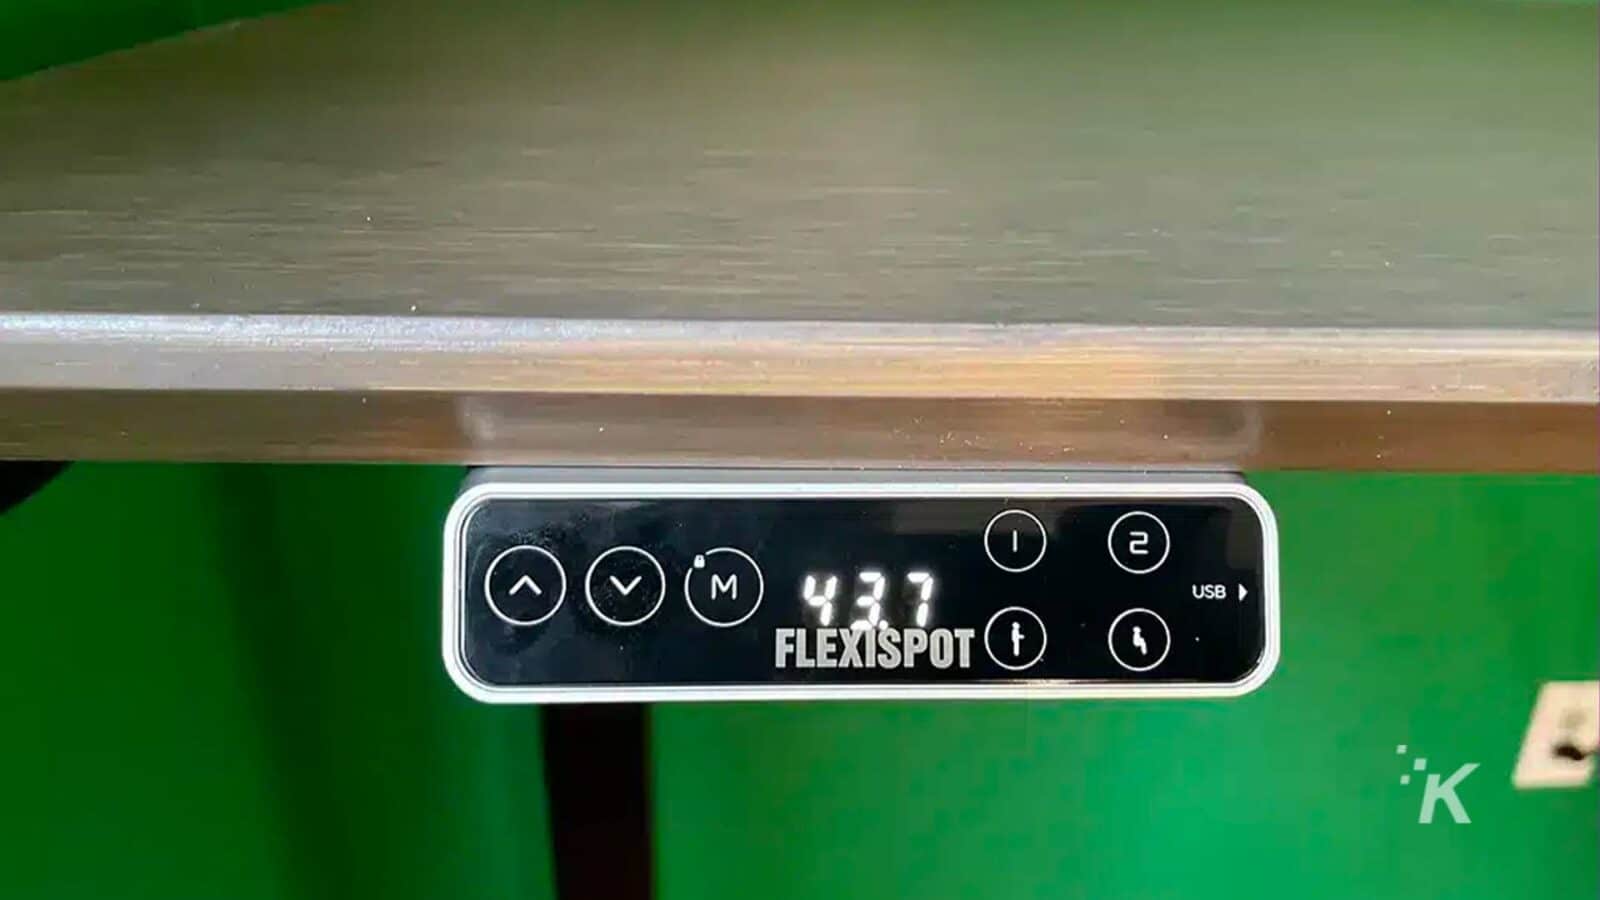 该图像显示 USB 电缆连接到 FlexiSpot 设备。全文： - VM) 437 2 1 USB od FLEXISPOT K